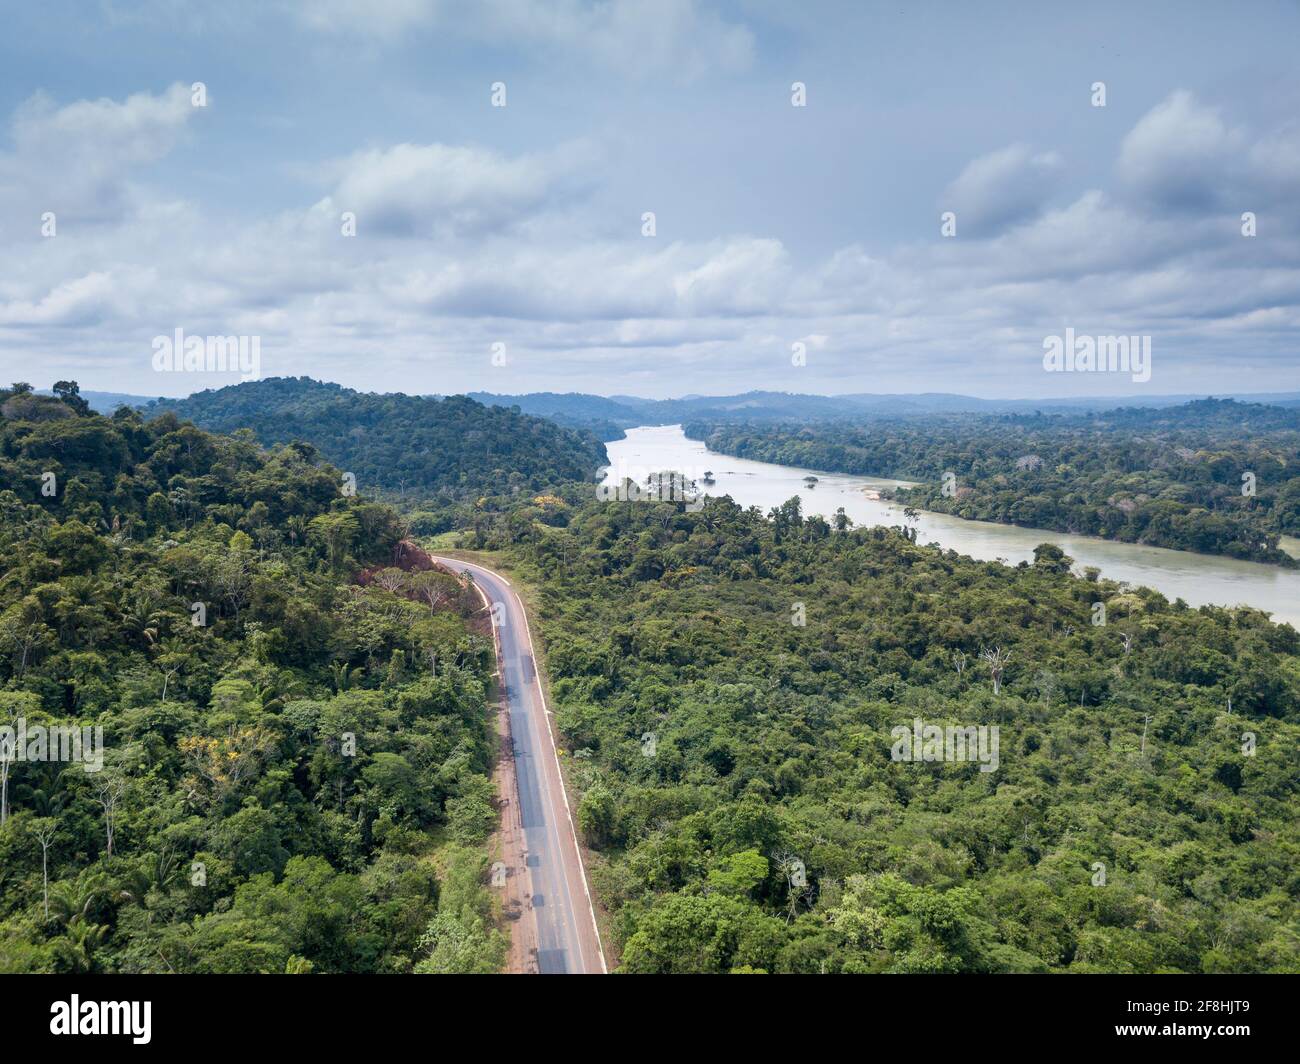 Magnifique vue aérienne de drone sur le paysage des arbres de la forêt amazonienne, route BR 163 et rivière Jaméxim Para, Brésil. Concept de nature, écologie, environnement Banque D'Images